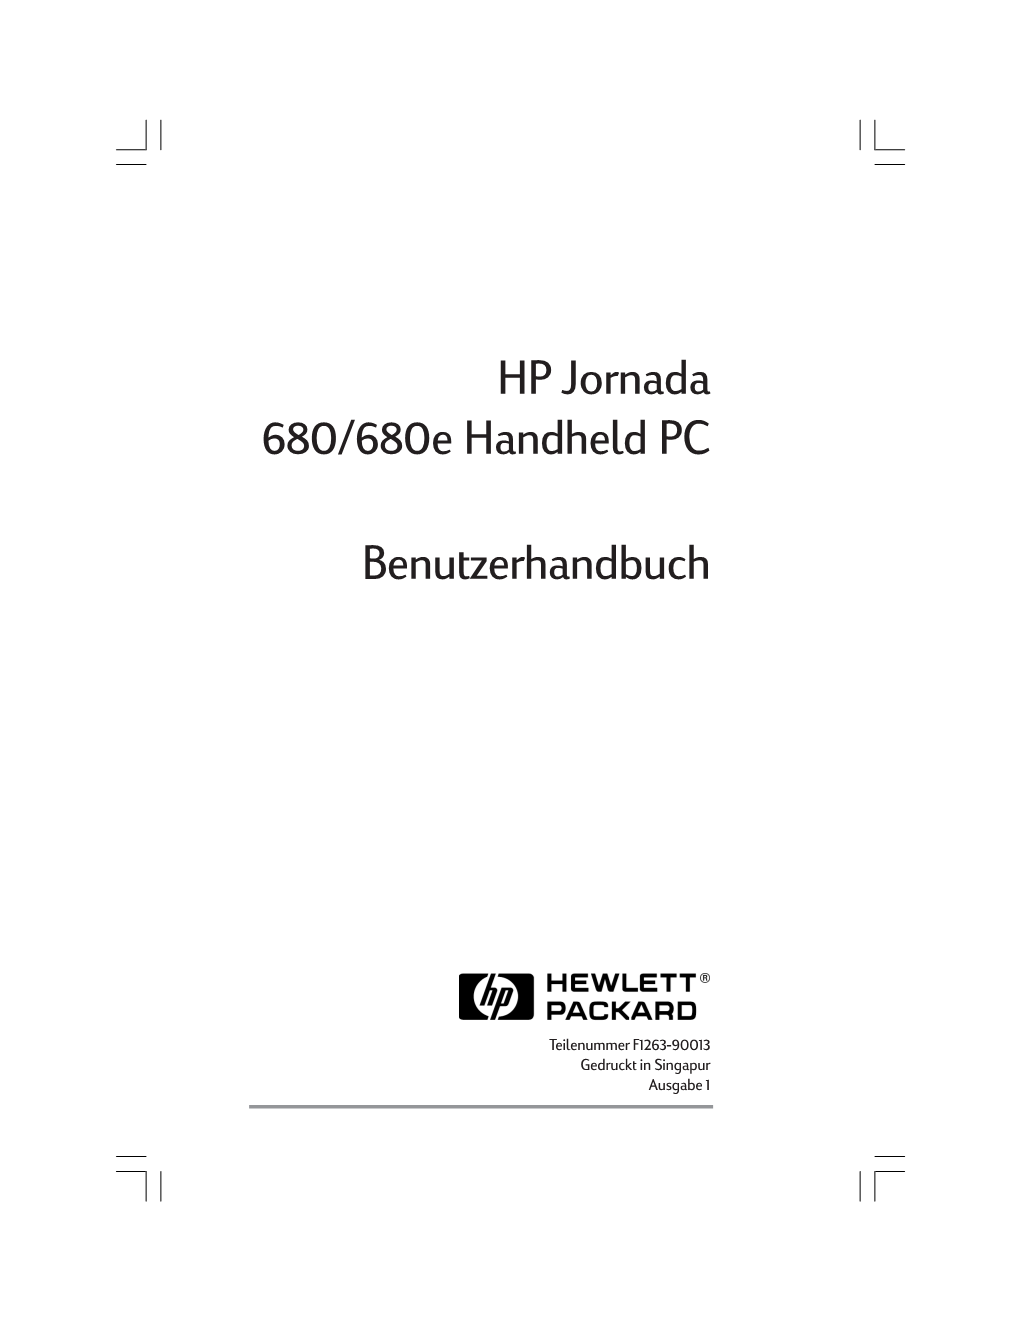 HP Jornada 680/680E Handheld PC Benutzerhandbuch